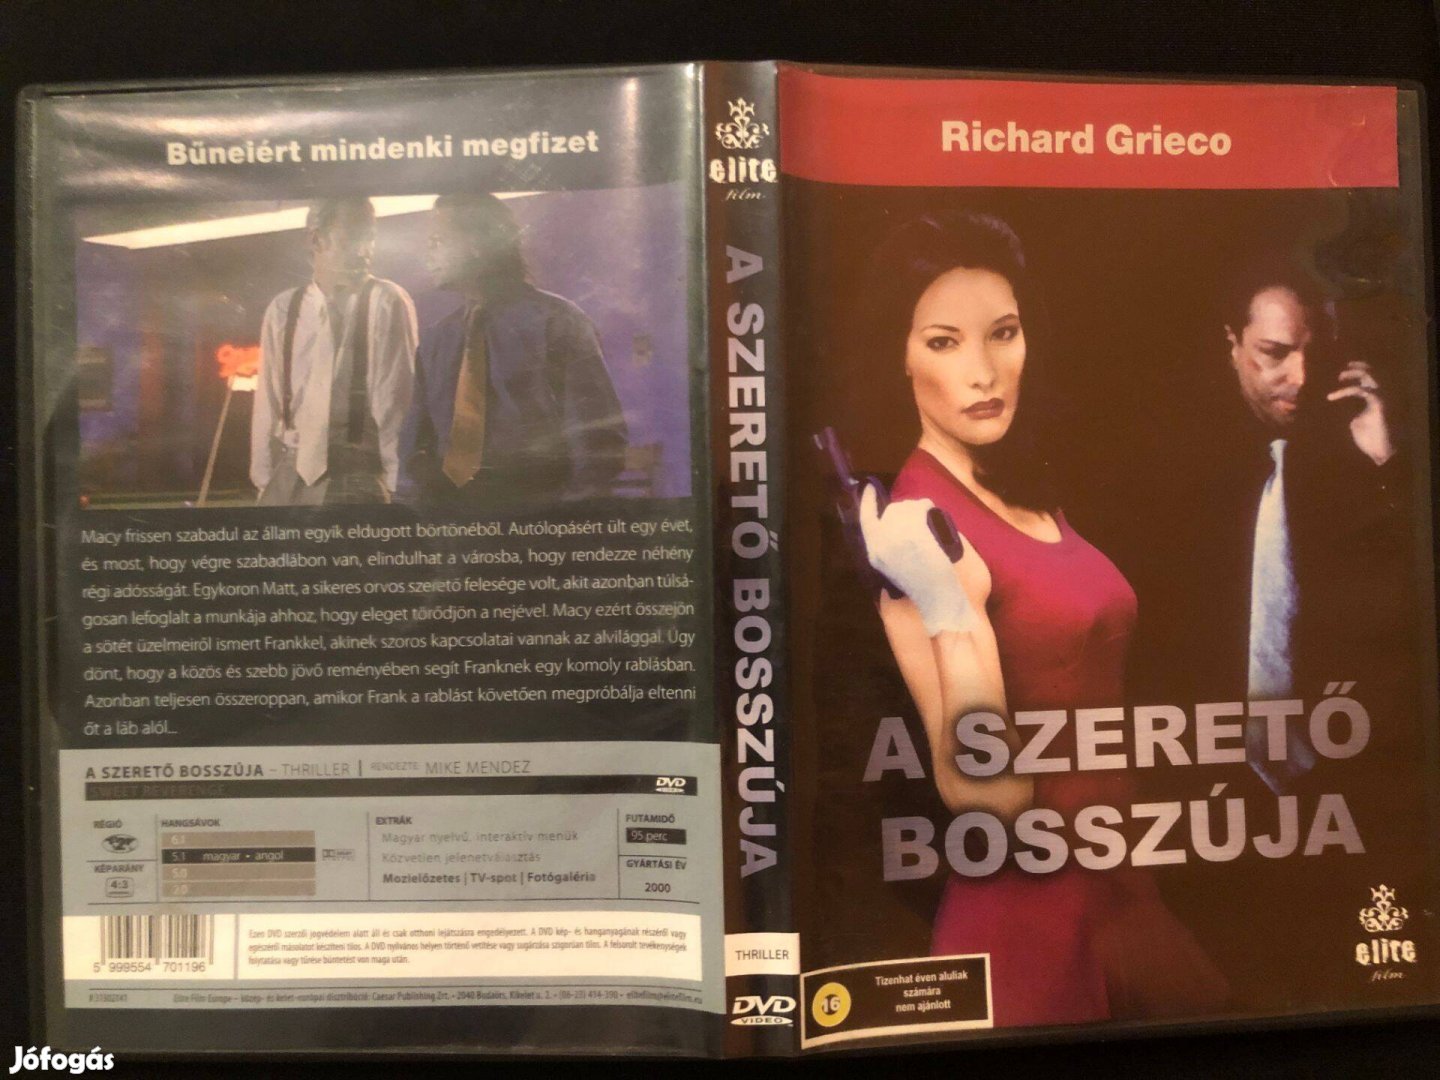 A szerető bosszúja DVD (Richard Grieco)